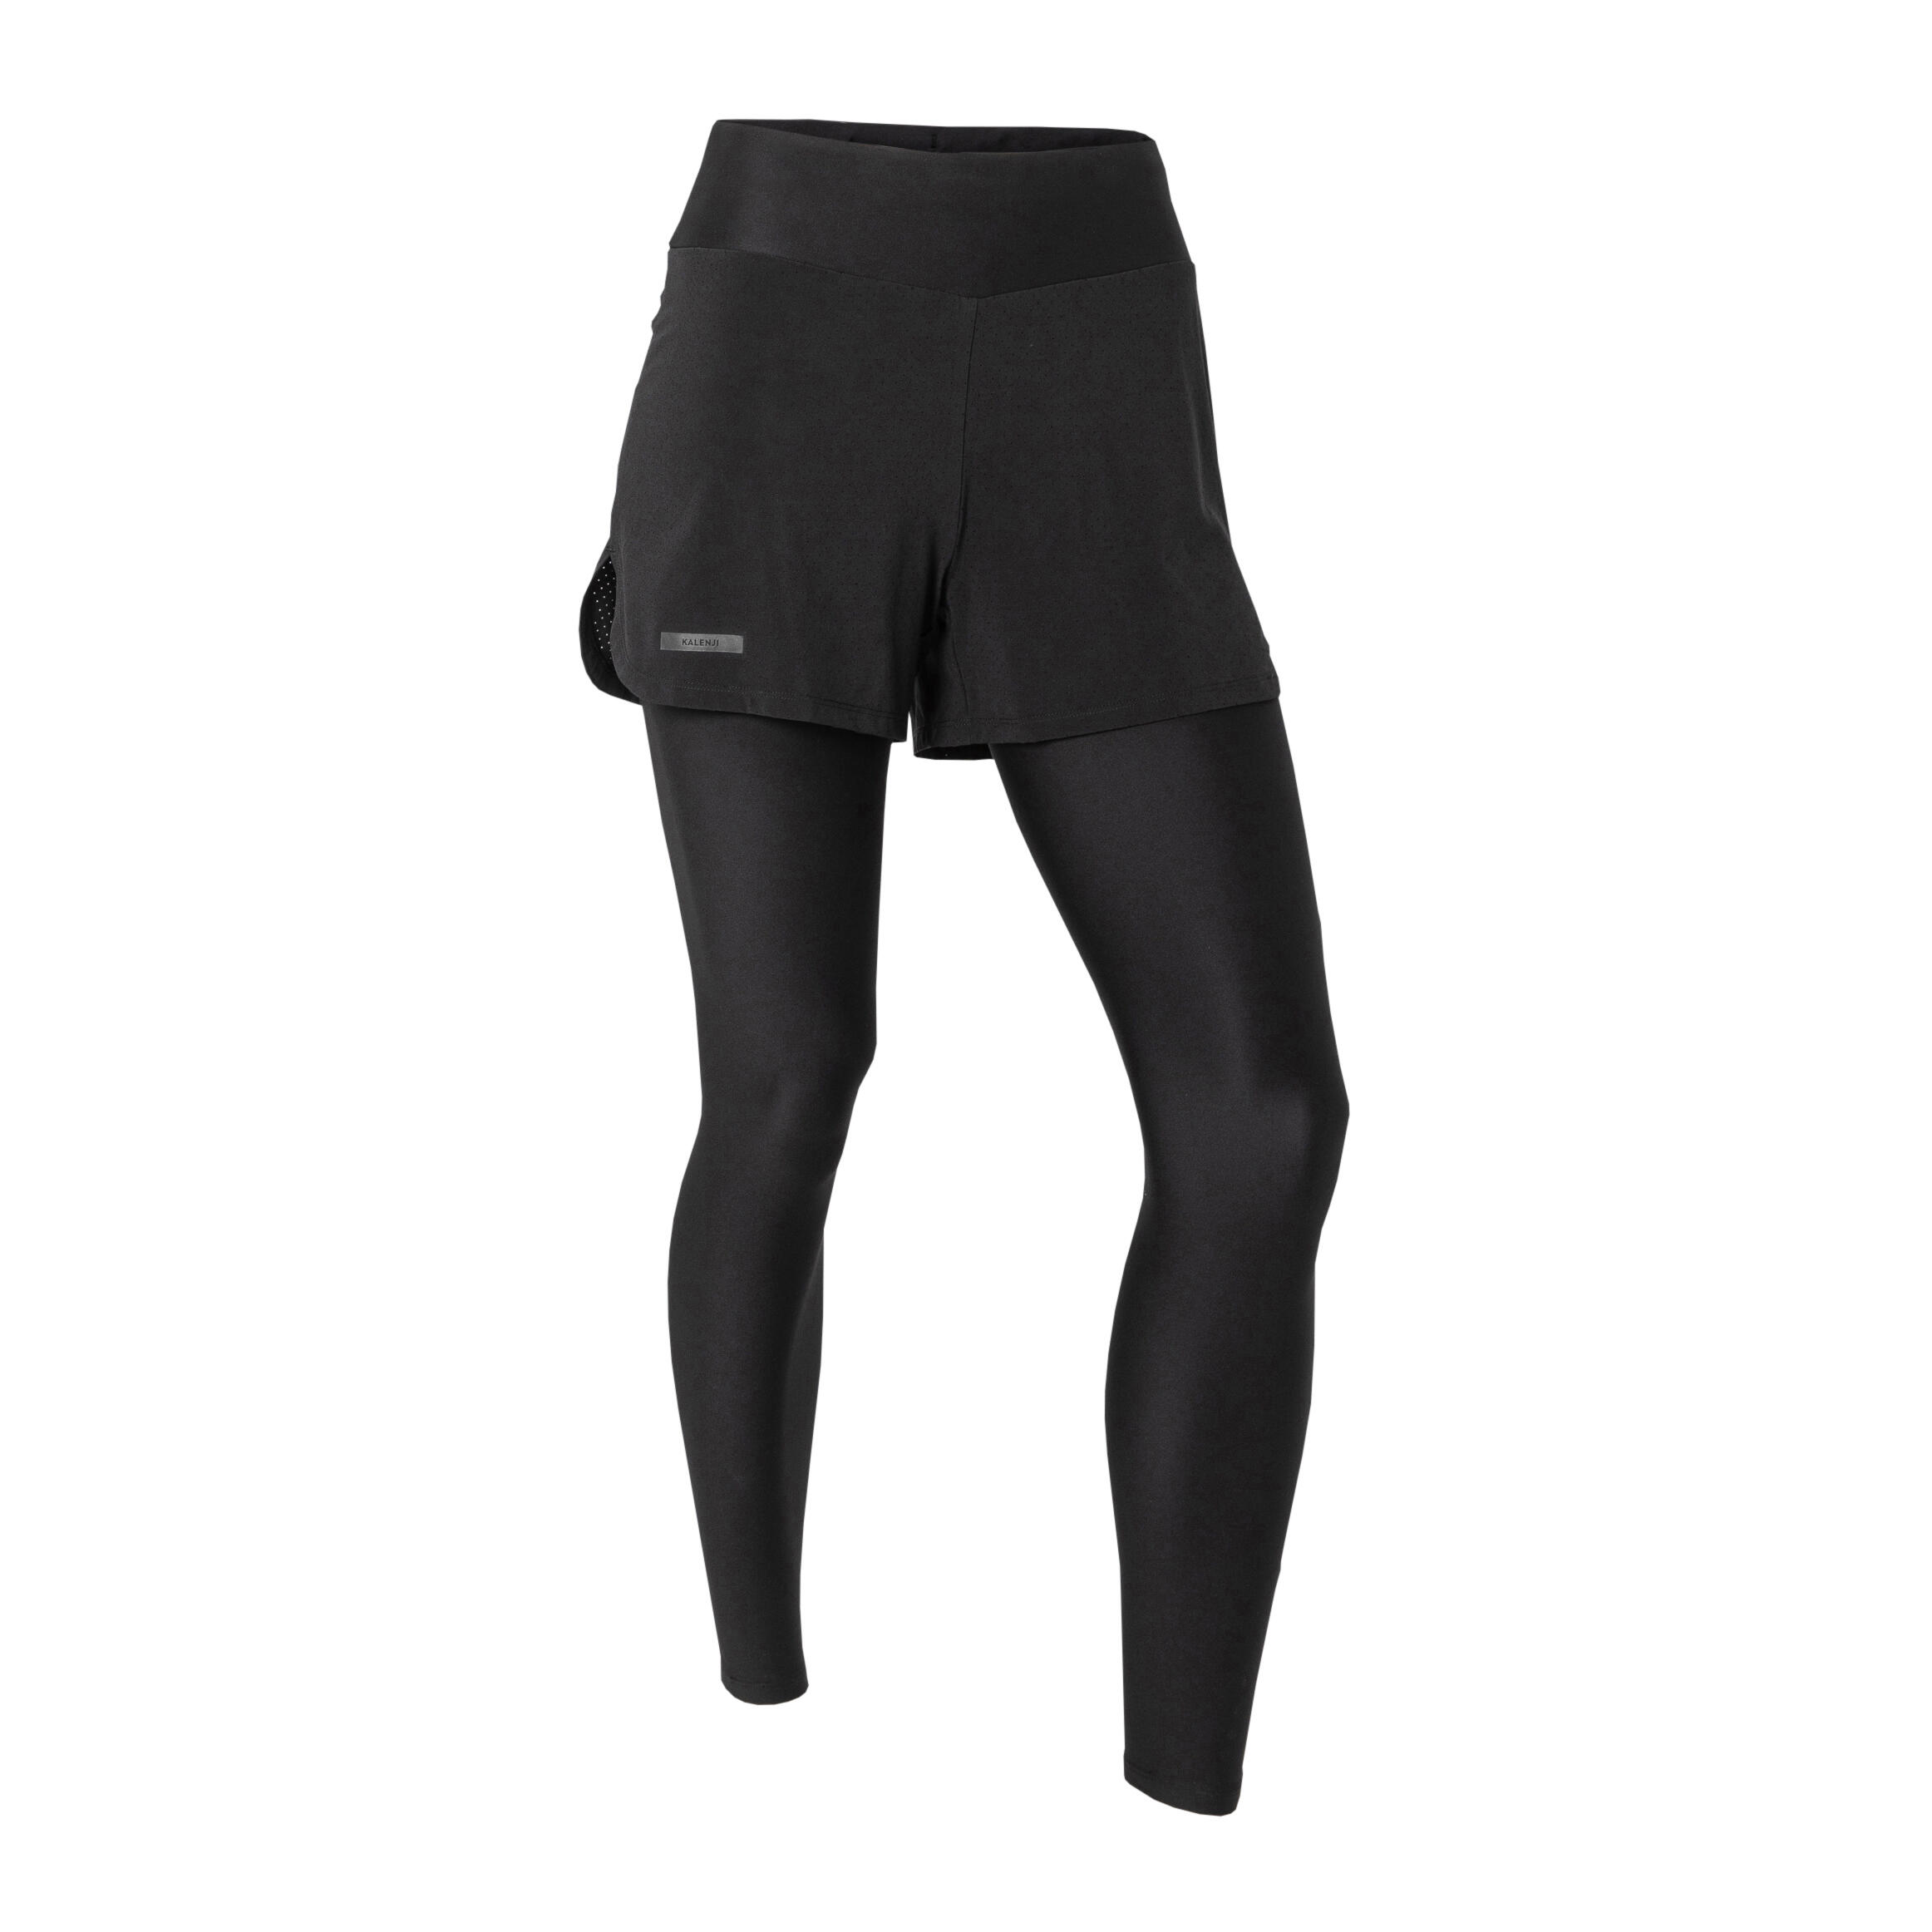 Black Legging Shorts - Black Shorts Leggings-sonthuy.vn